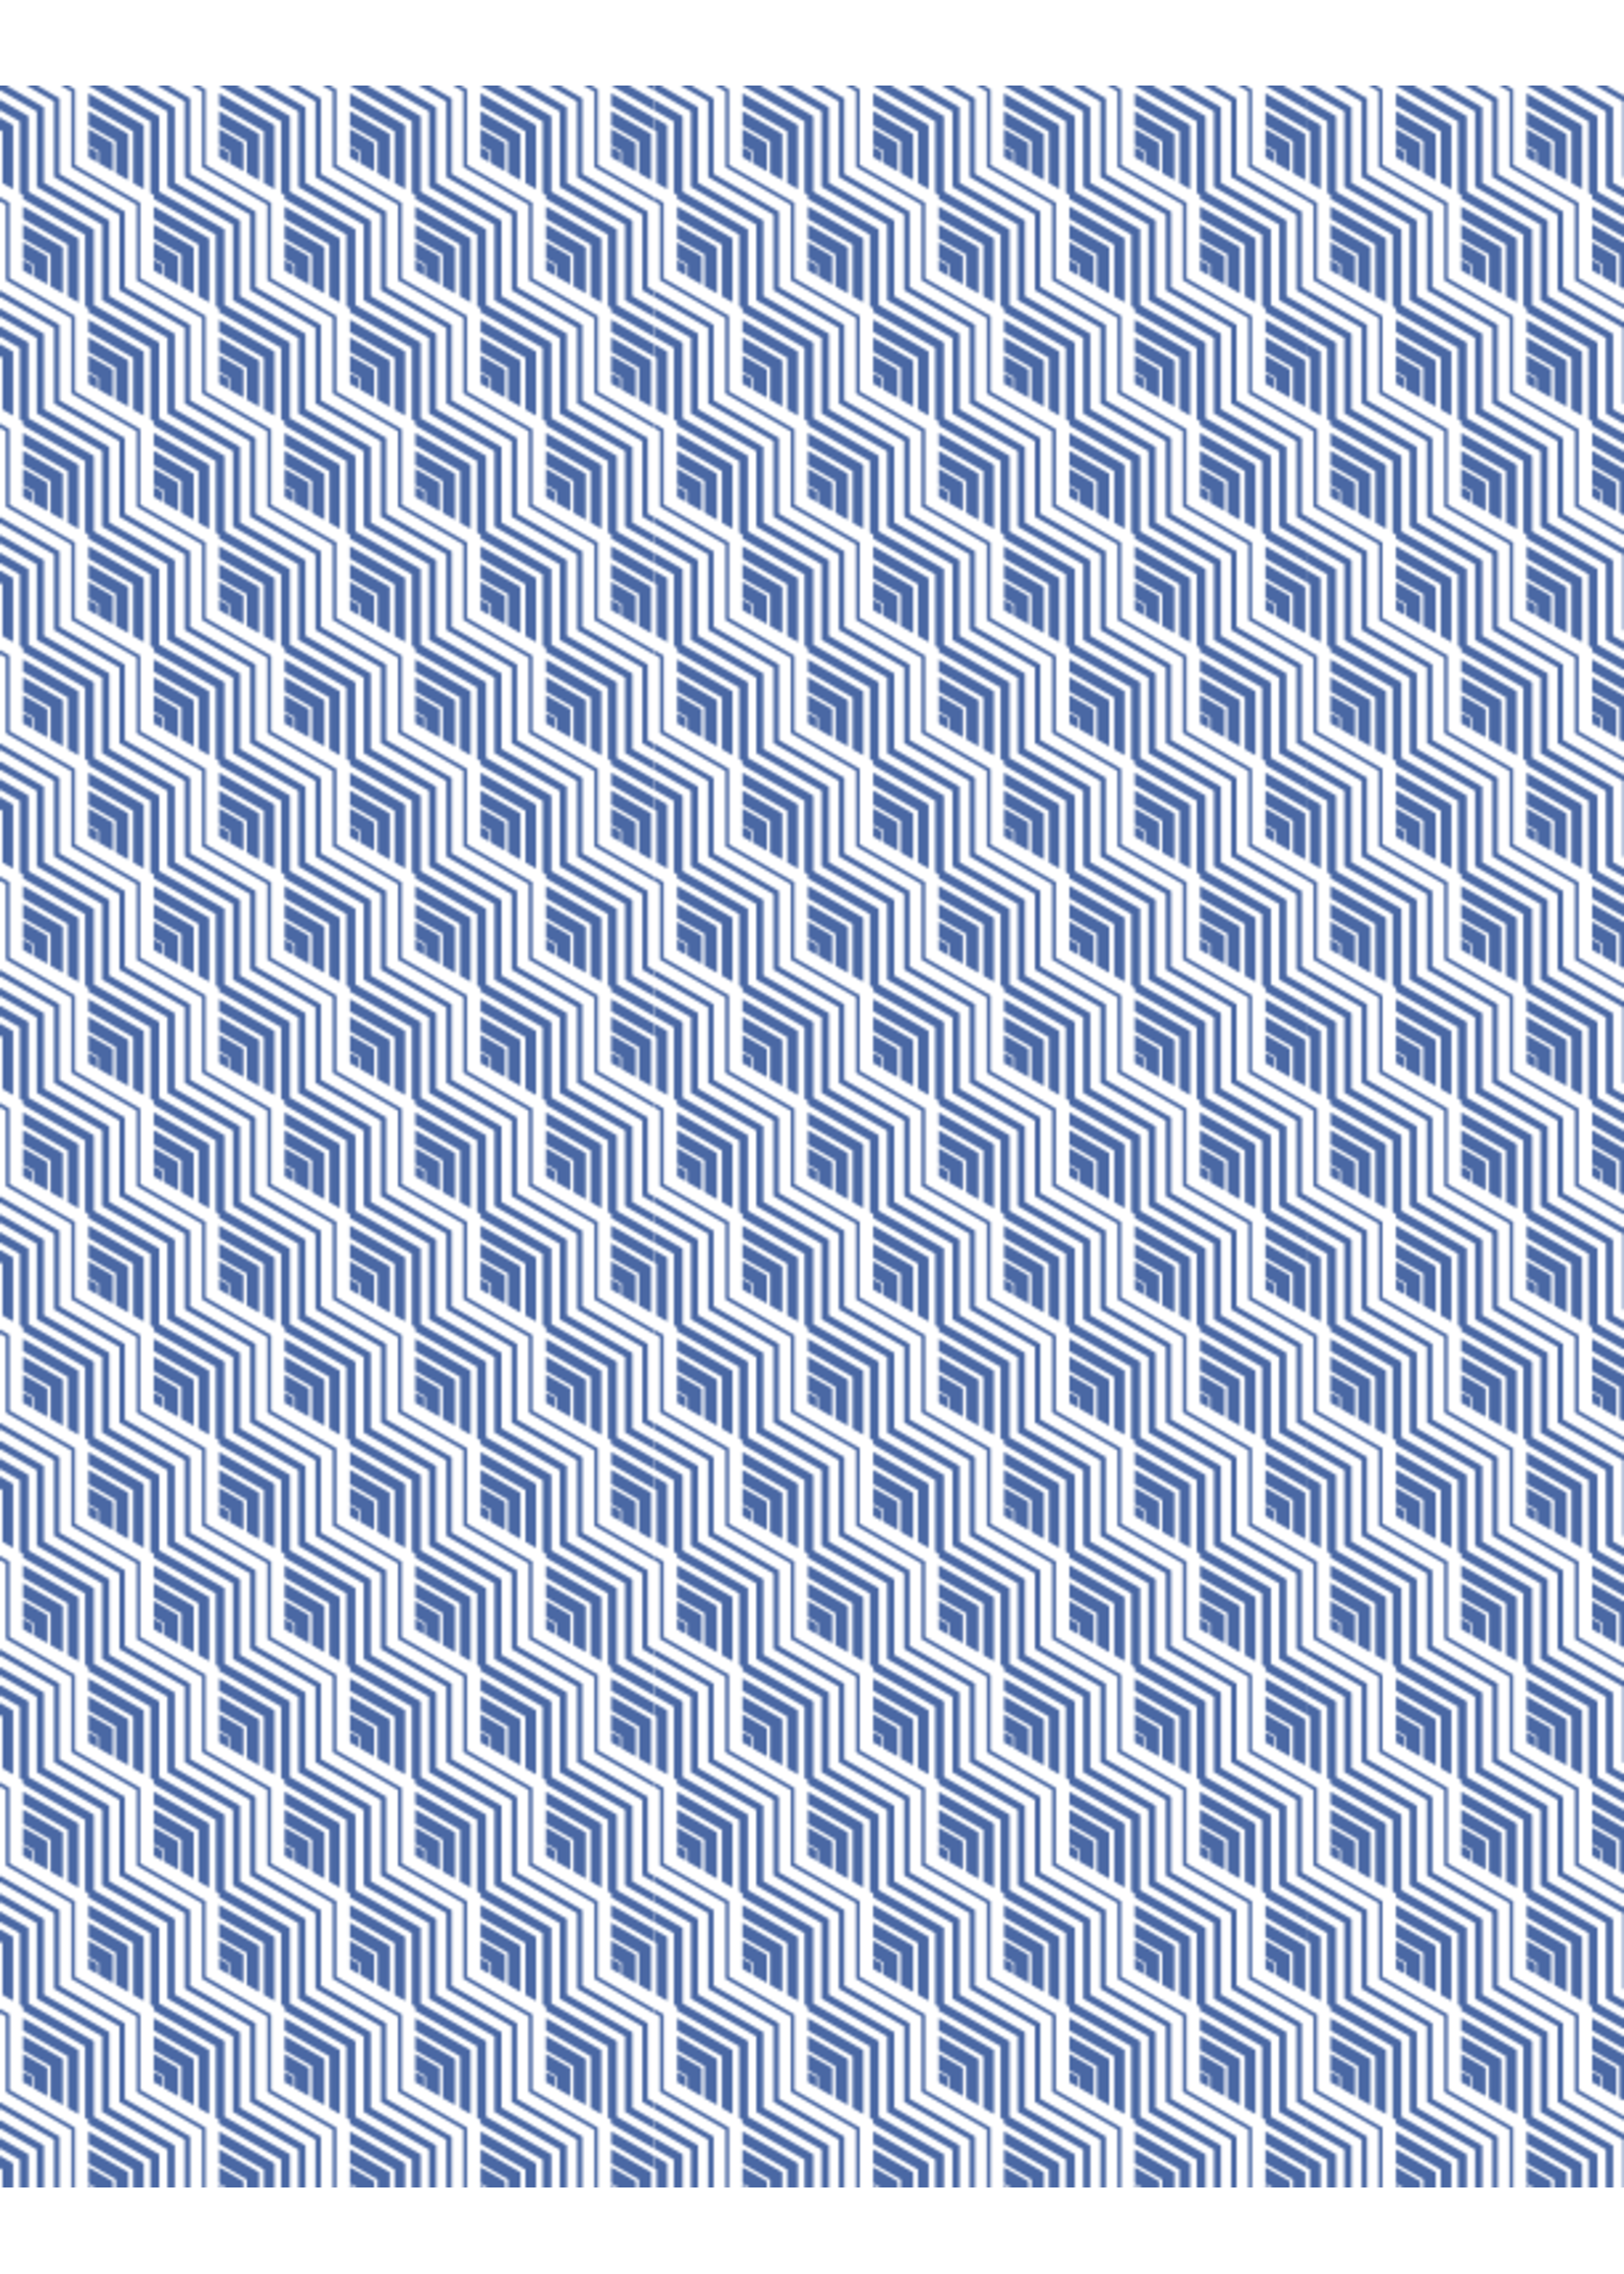 Sanbao Pattern decal – Escher